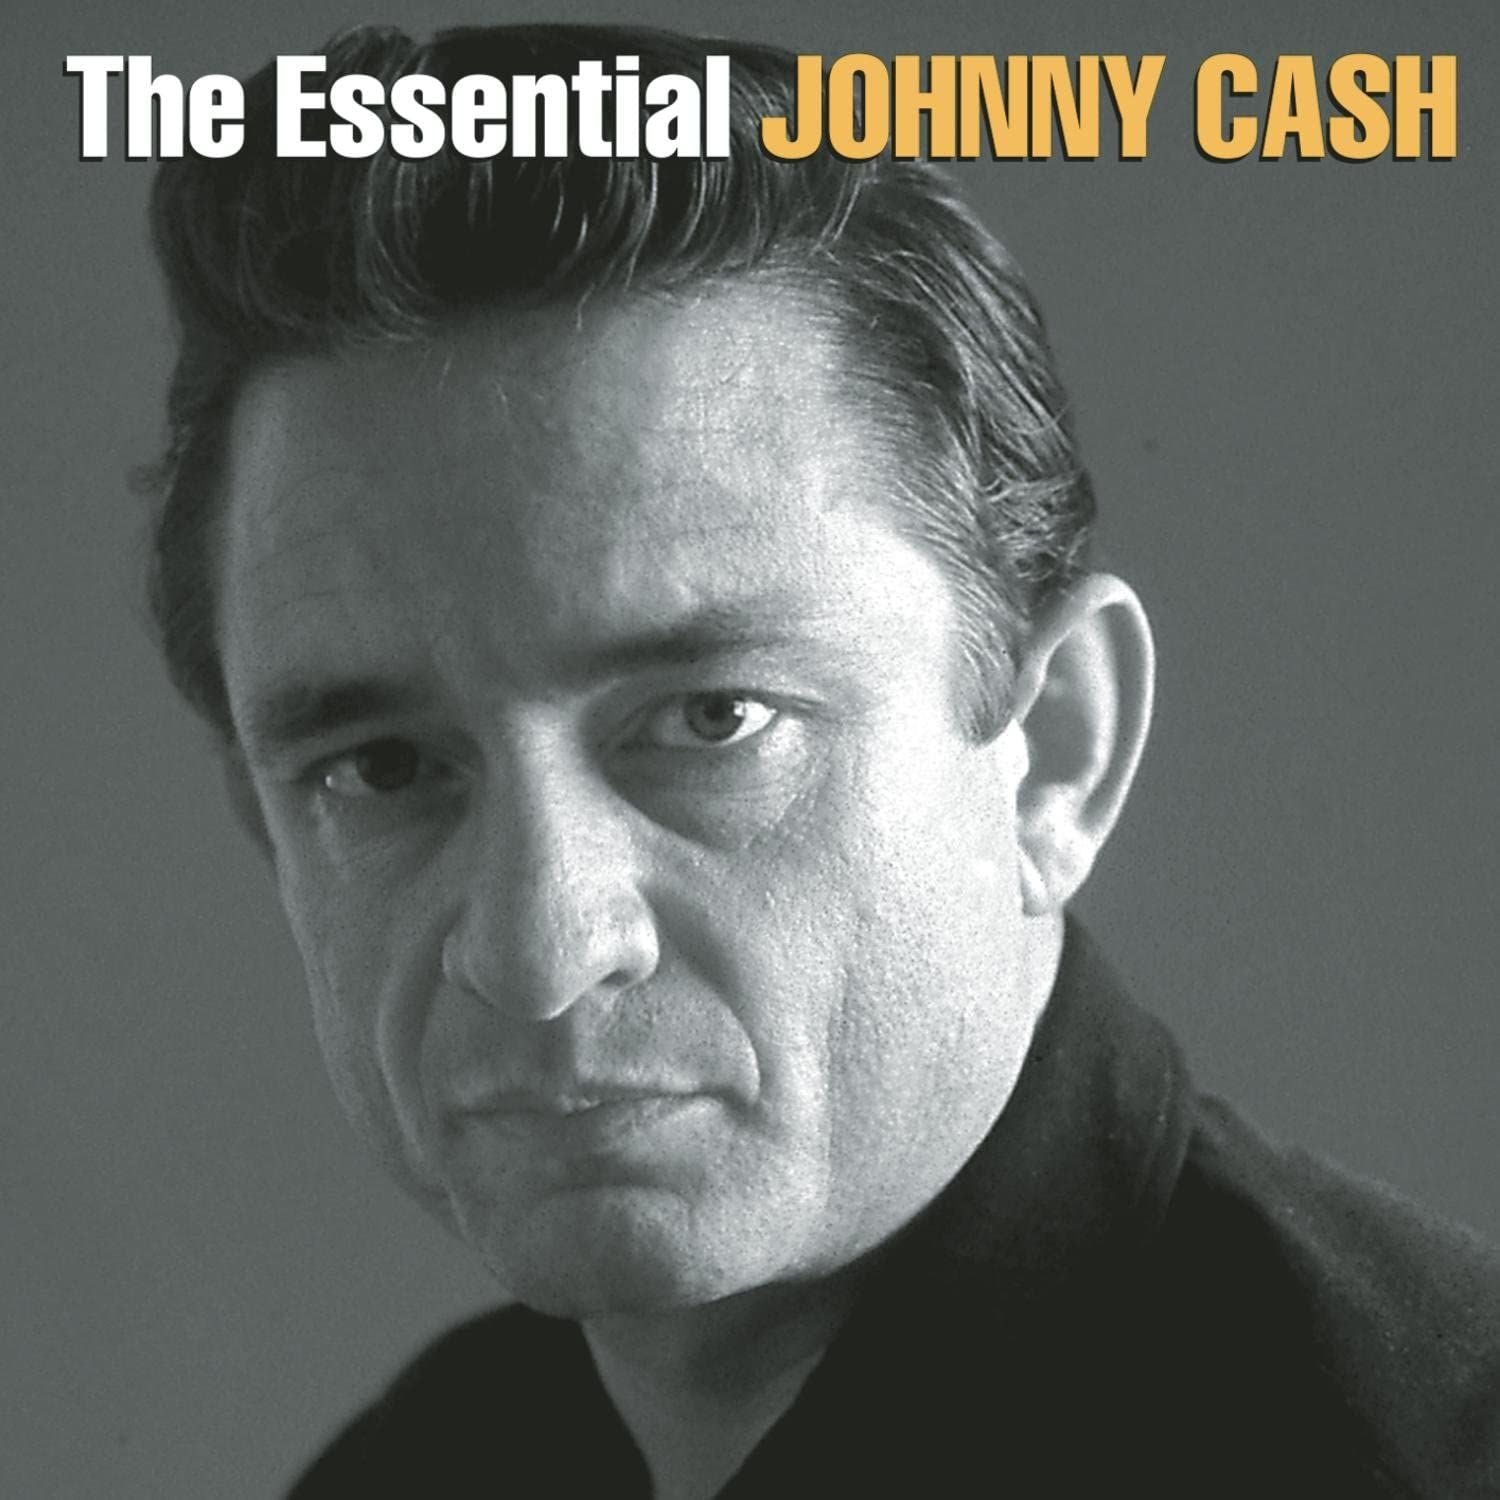 The Essential Johnny Cash: Vinyl LP